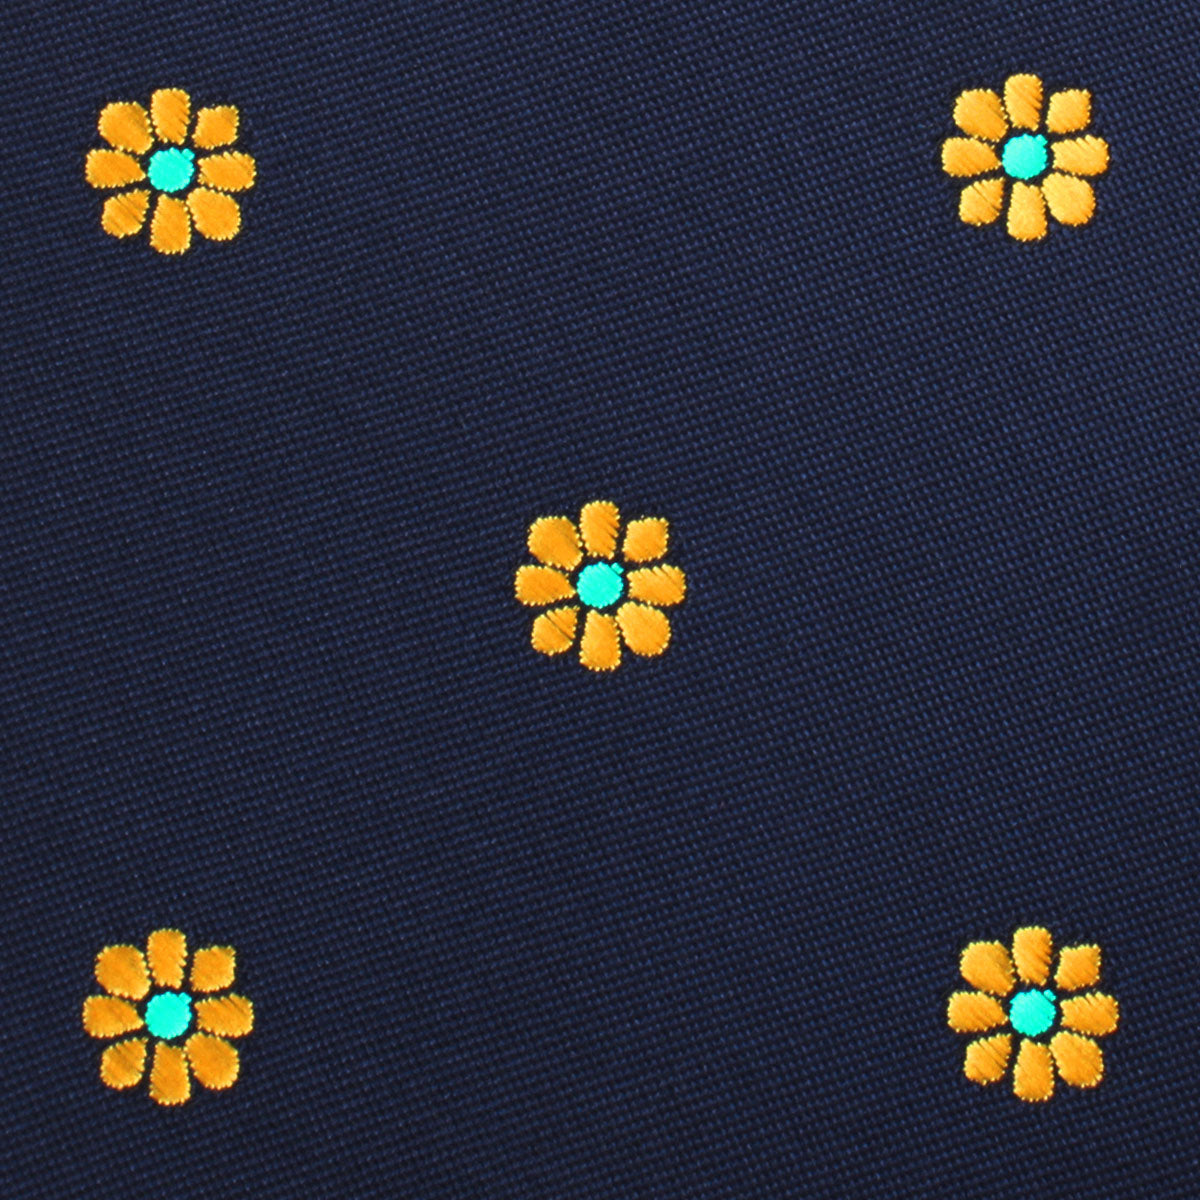 Sunflower Necktie Fabric